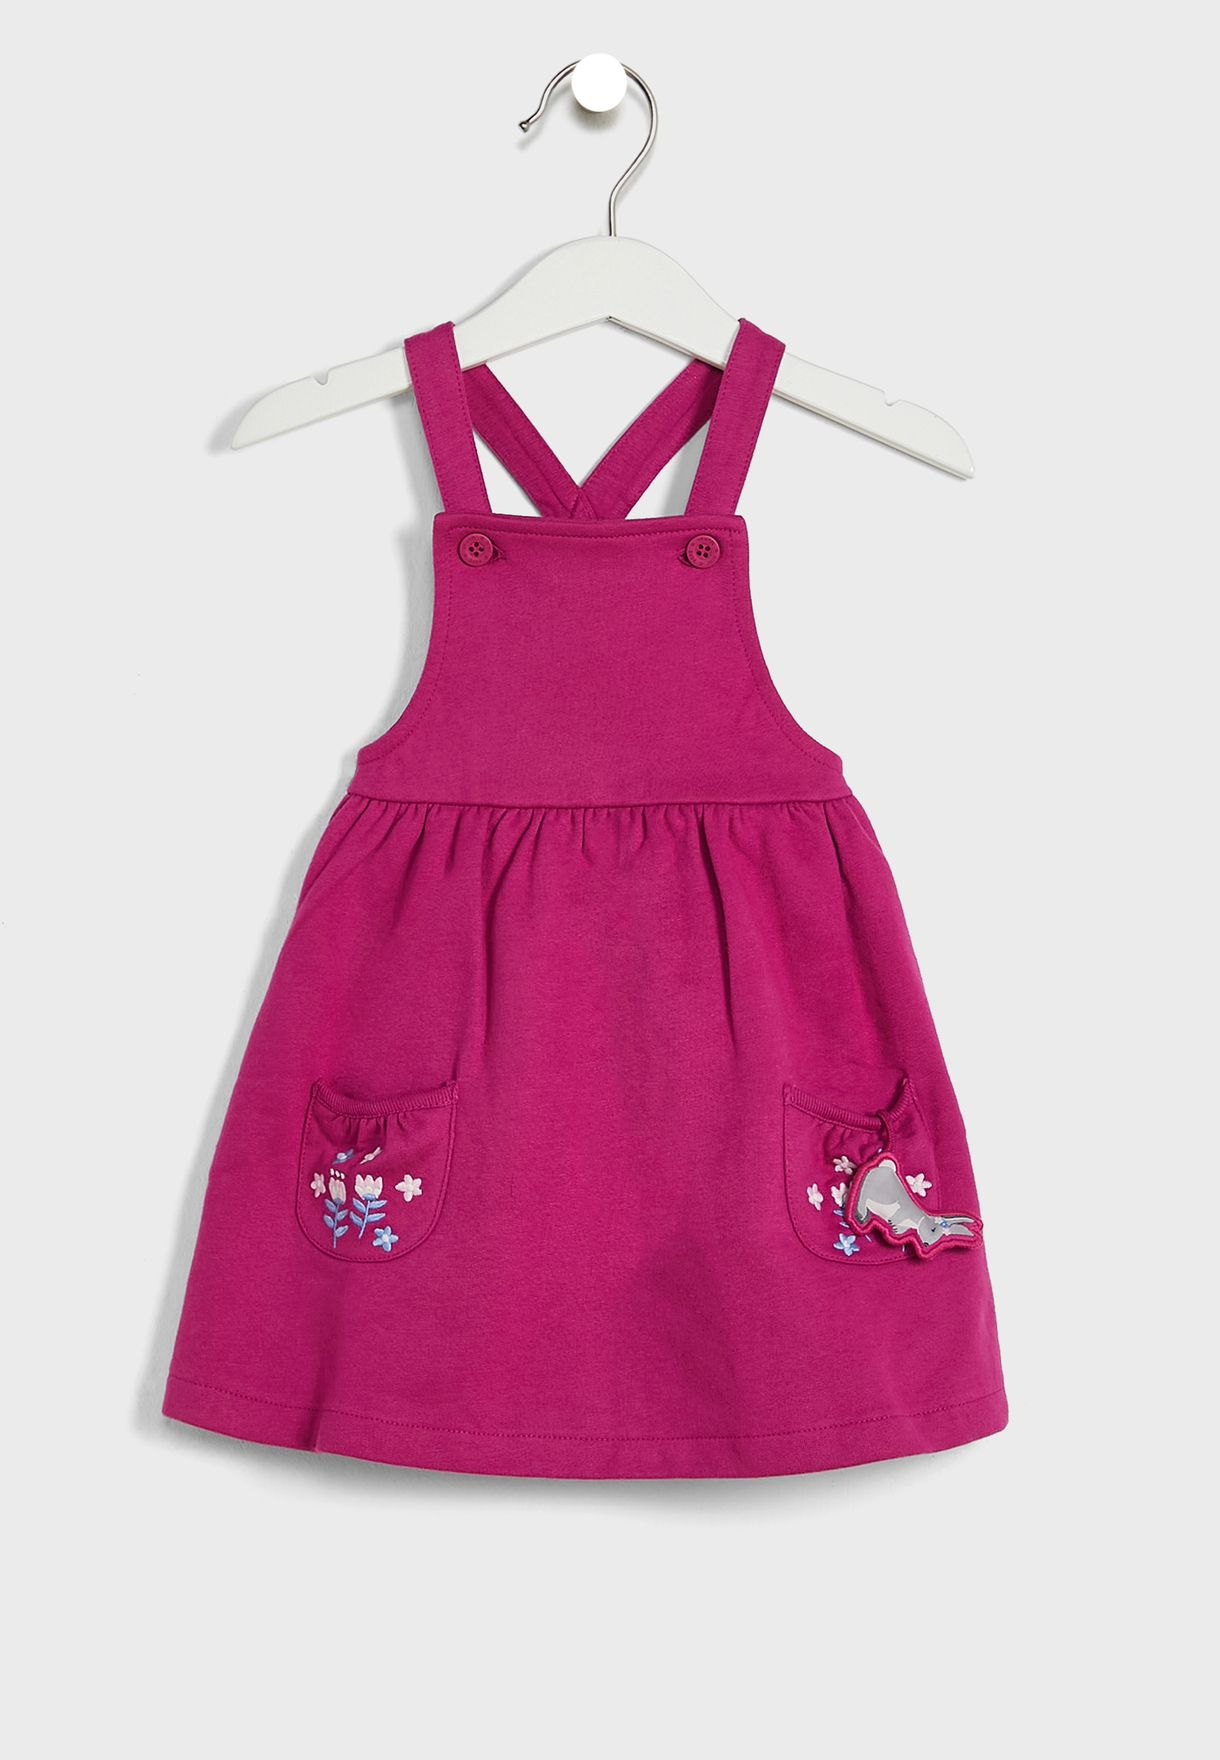 Kids Bunny Print Dress & Top Set